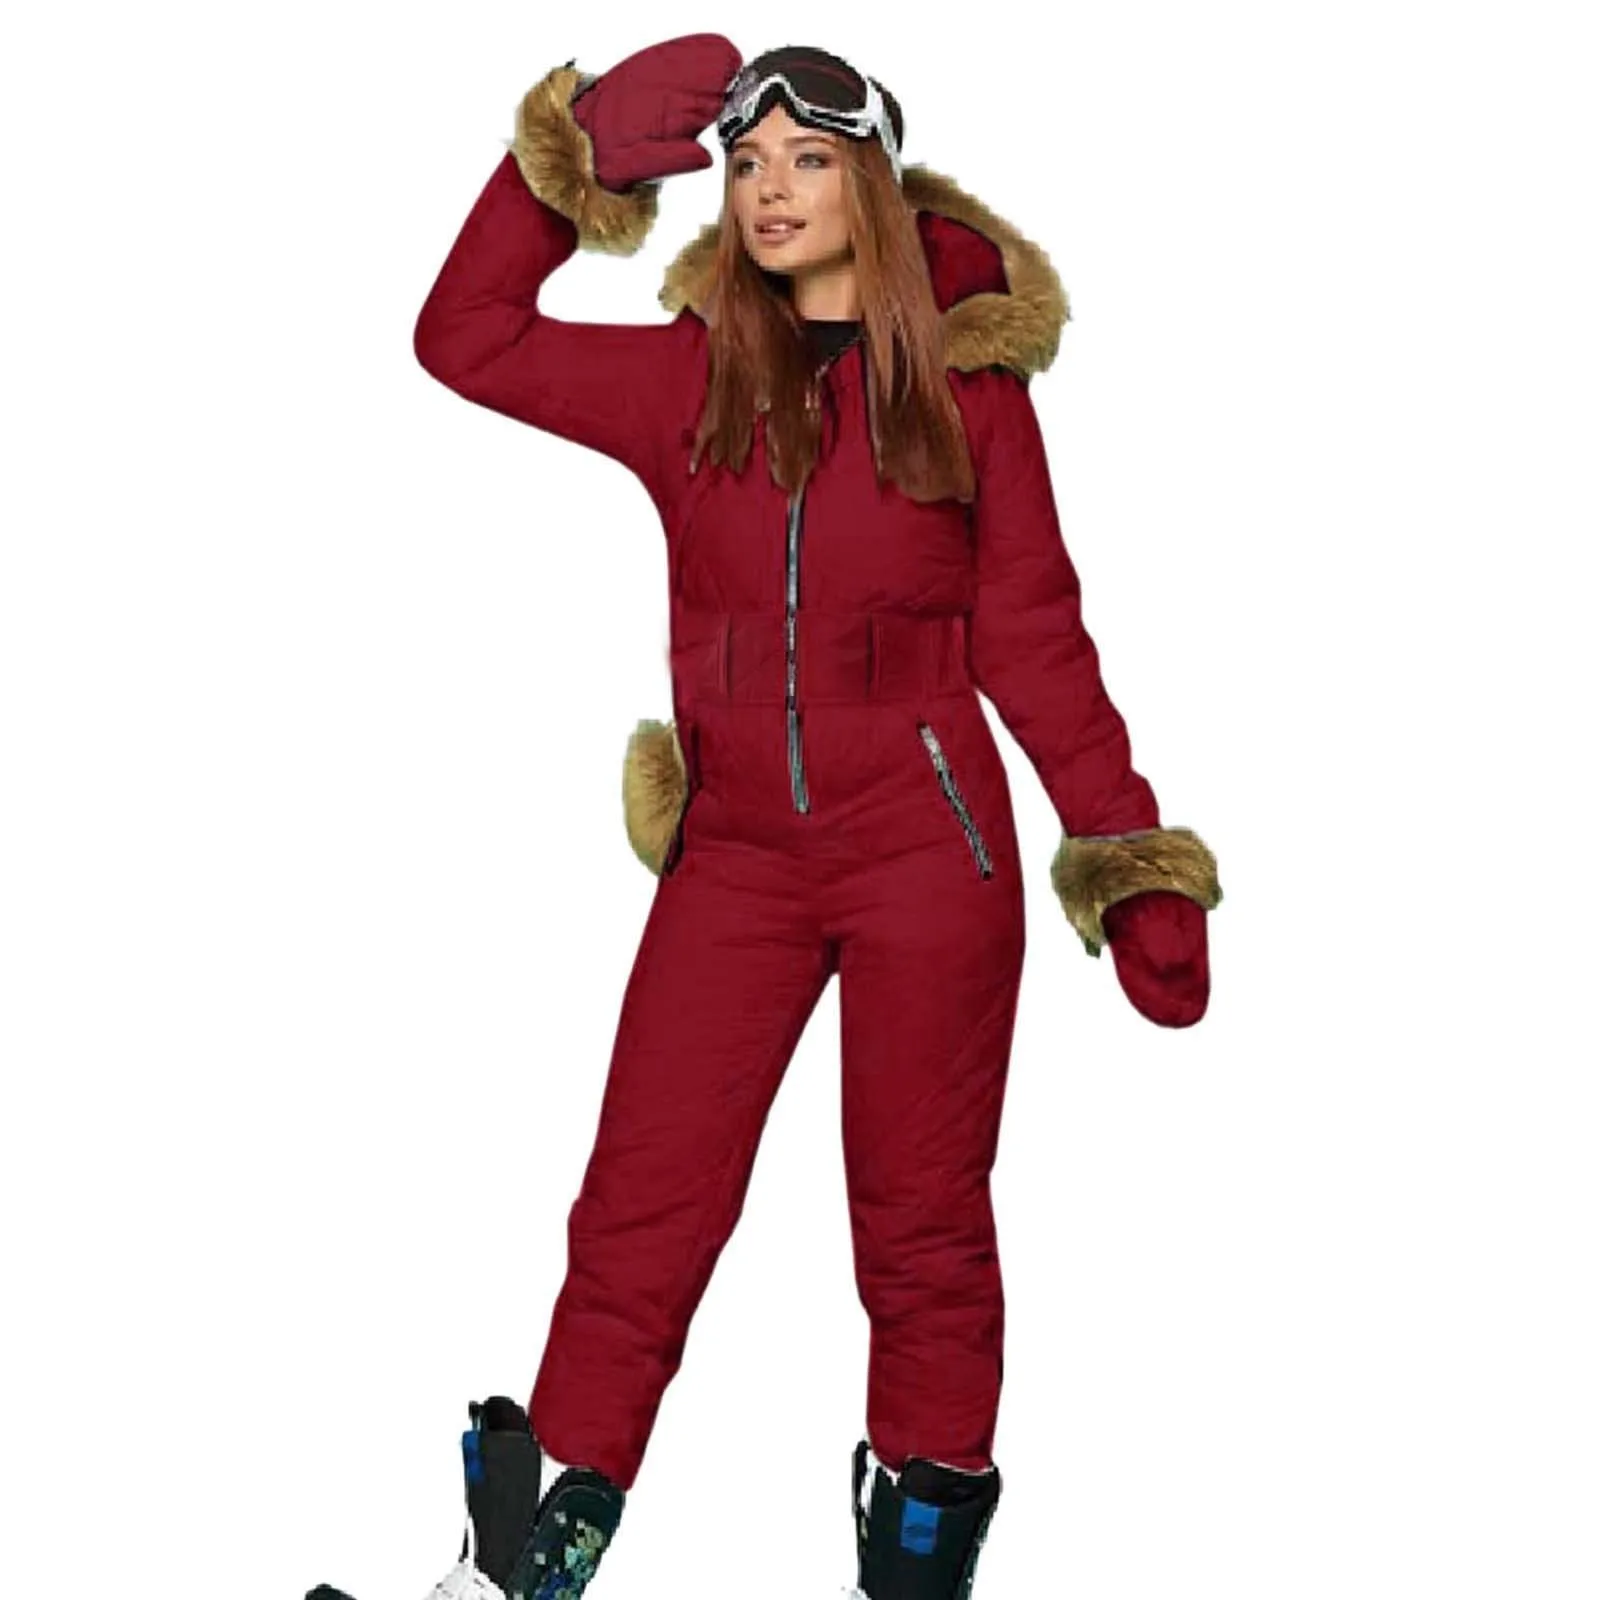 combinaison de ski pour sac sport de plein fausse combinaison avec sweat vestes et pantalons de ski